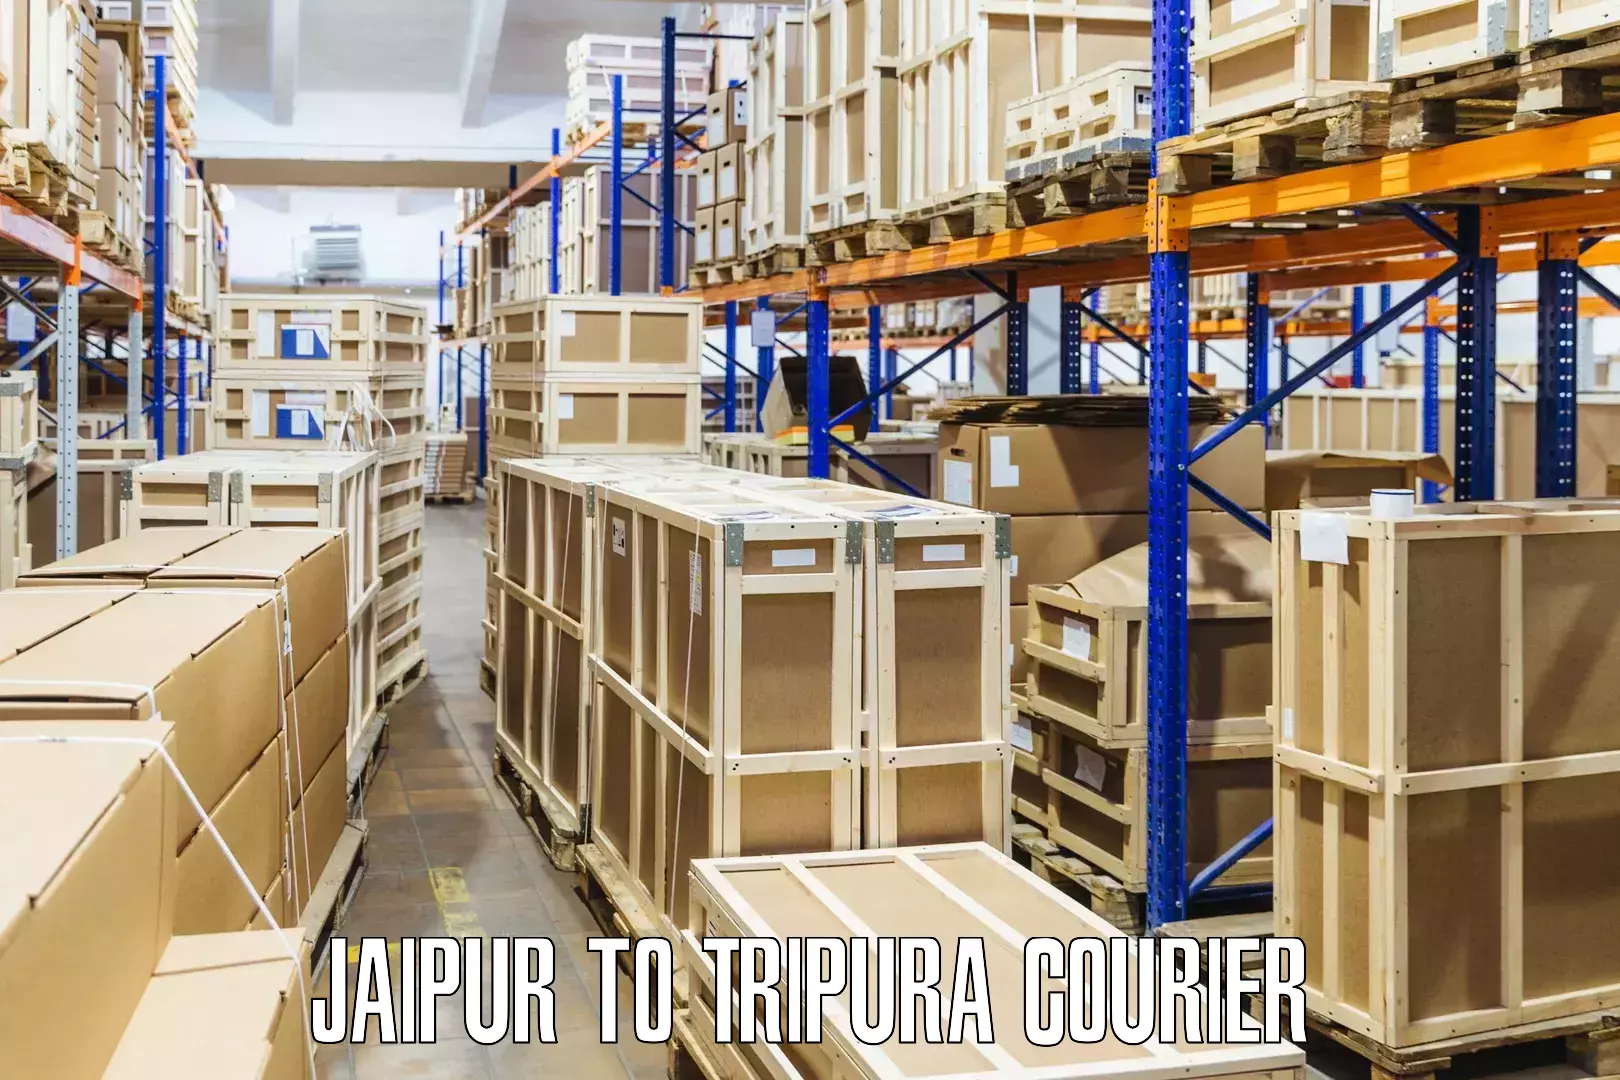 Efficient parcel transport Jaipur to Sonamura